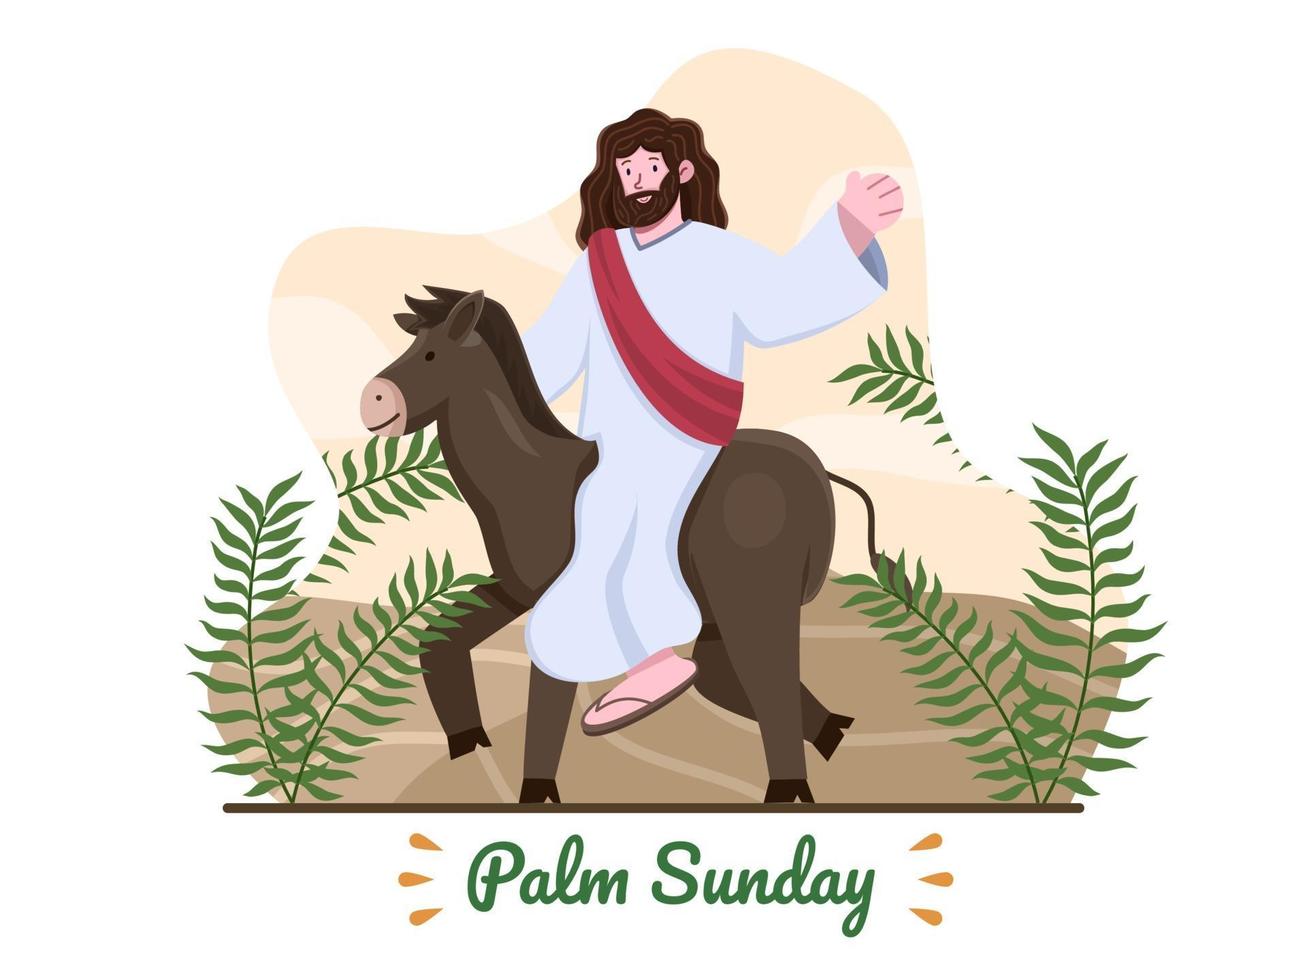 Palmensonntagsillustration mit Jesus reiten einen Esel und mit Palmblättern. Jesus reitet Esel betritt Jerusalem. christlicher Palmensonntag religiöser Feiertag. geeignet für Grußkarte, Banner, Postkarte, Web usw. vektor